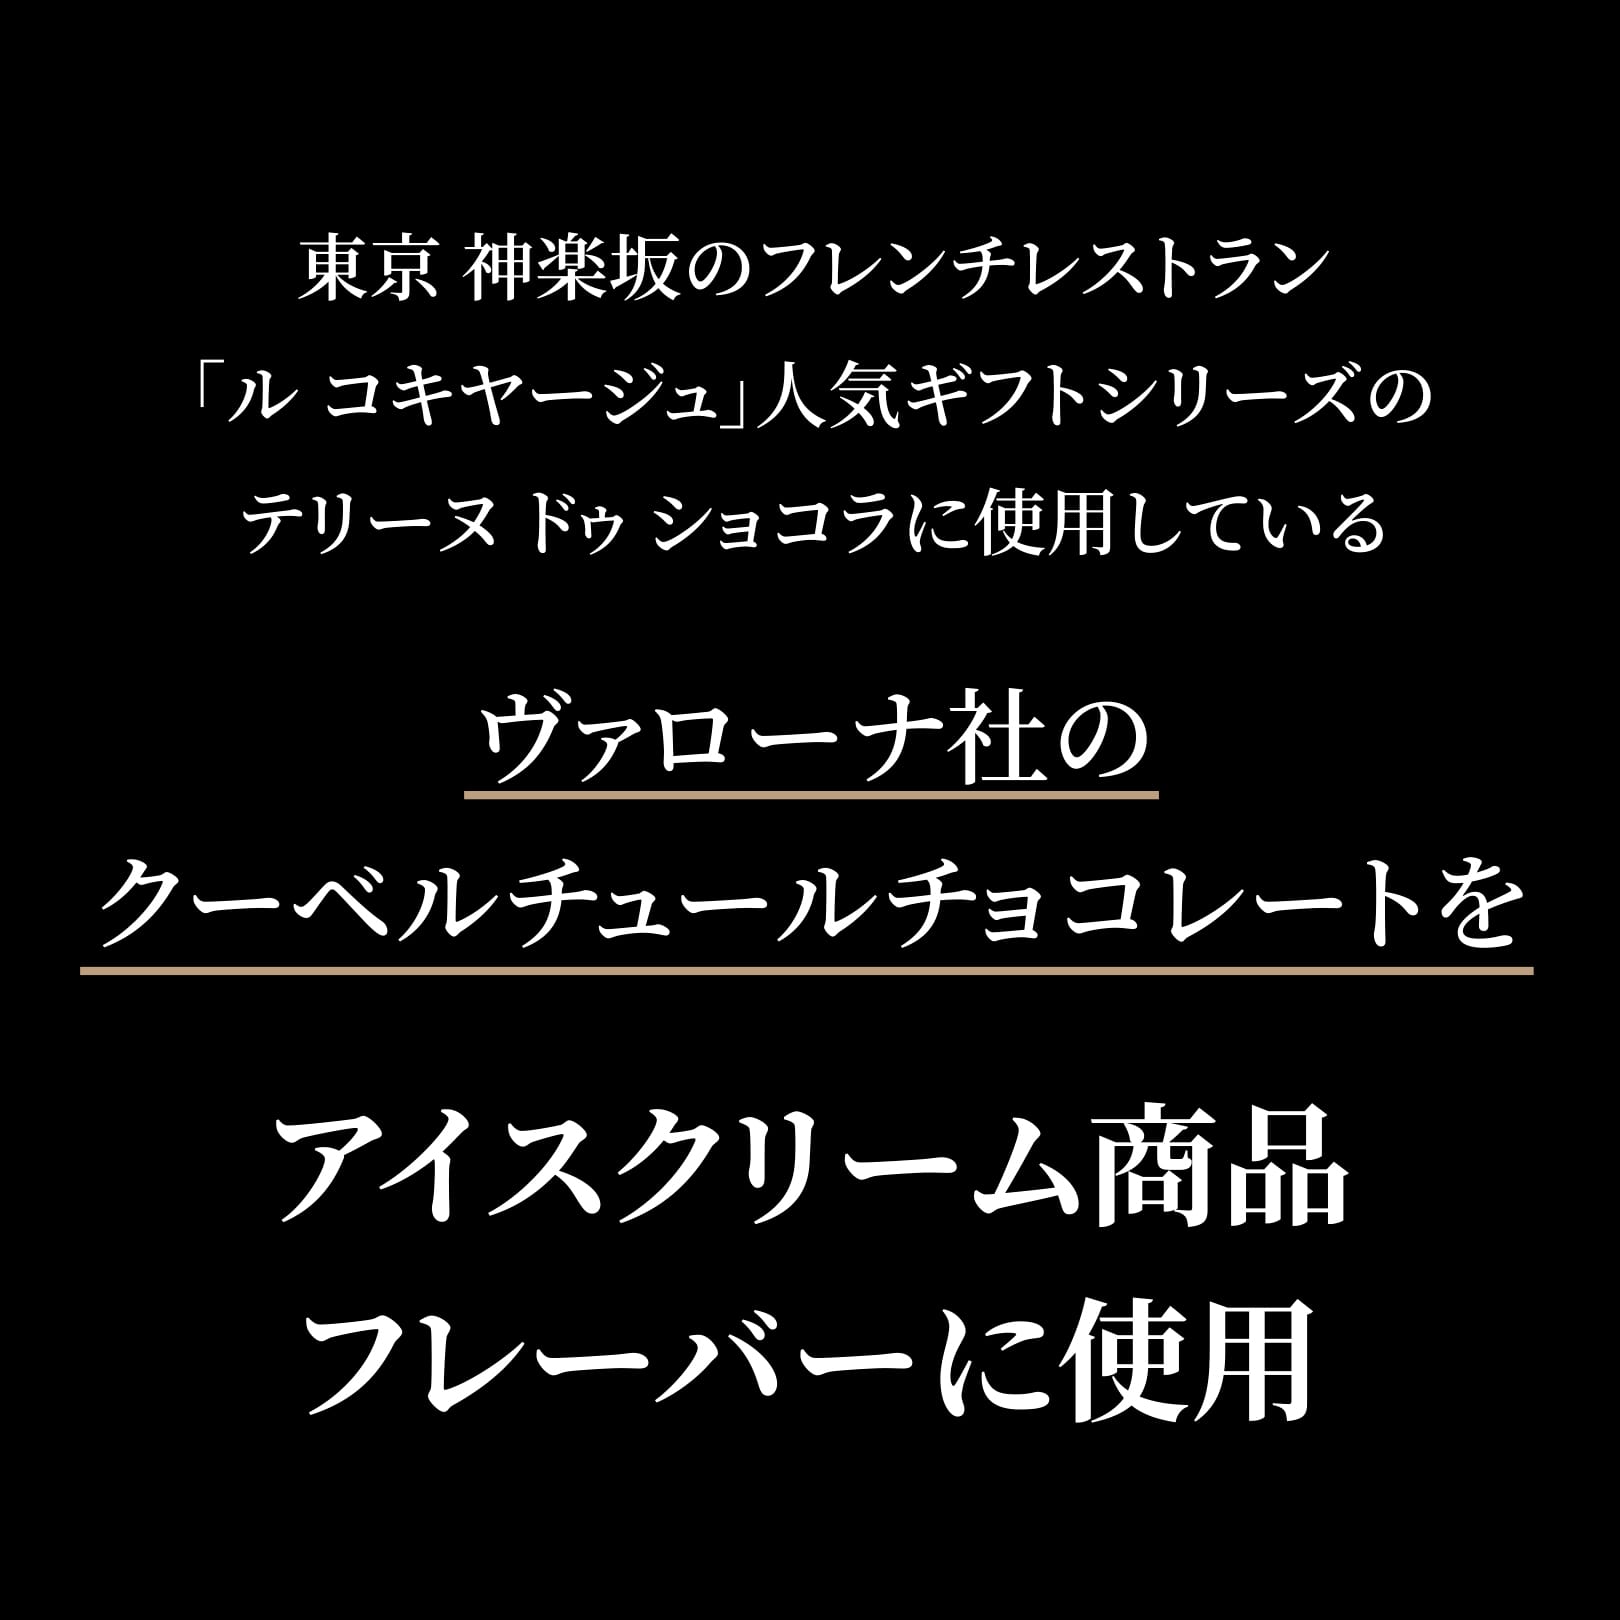 東京 神楽坂のフレンチレストラン「ル コキヤージュ」人気ギフトシリーズのテリーヌ ドゥ ショコラに使用しているヴァローナ社のクーベルチュールチョコレートをアイスクリーム商品フレーバーに使用